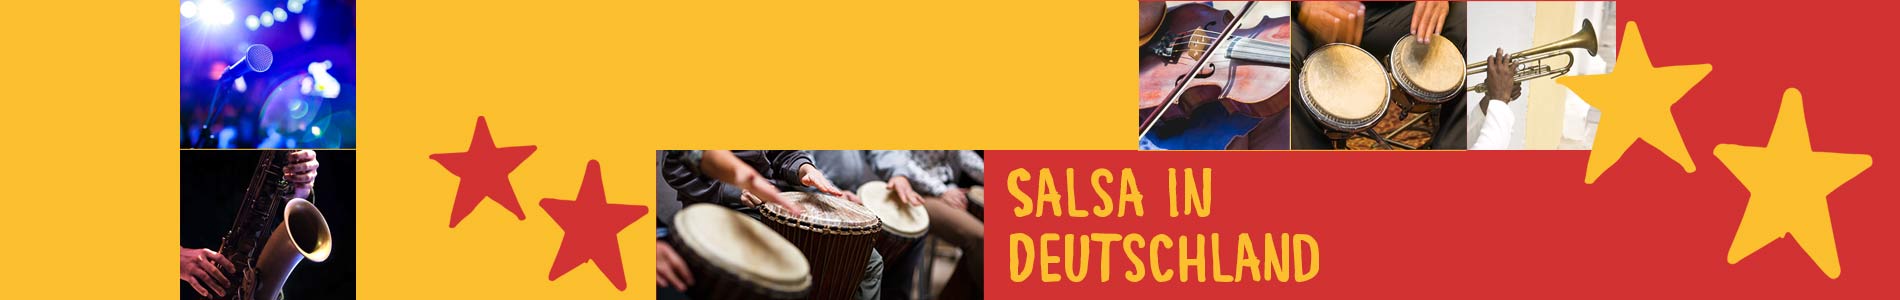 Salsa in Dermbach – Salsa lernen und tanzen, Tanzkurse, Partys, Veranstaltungen